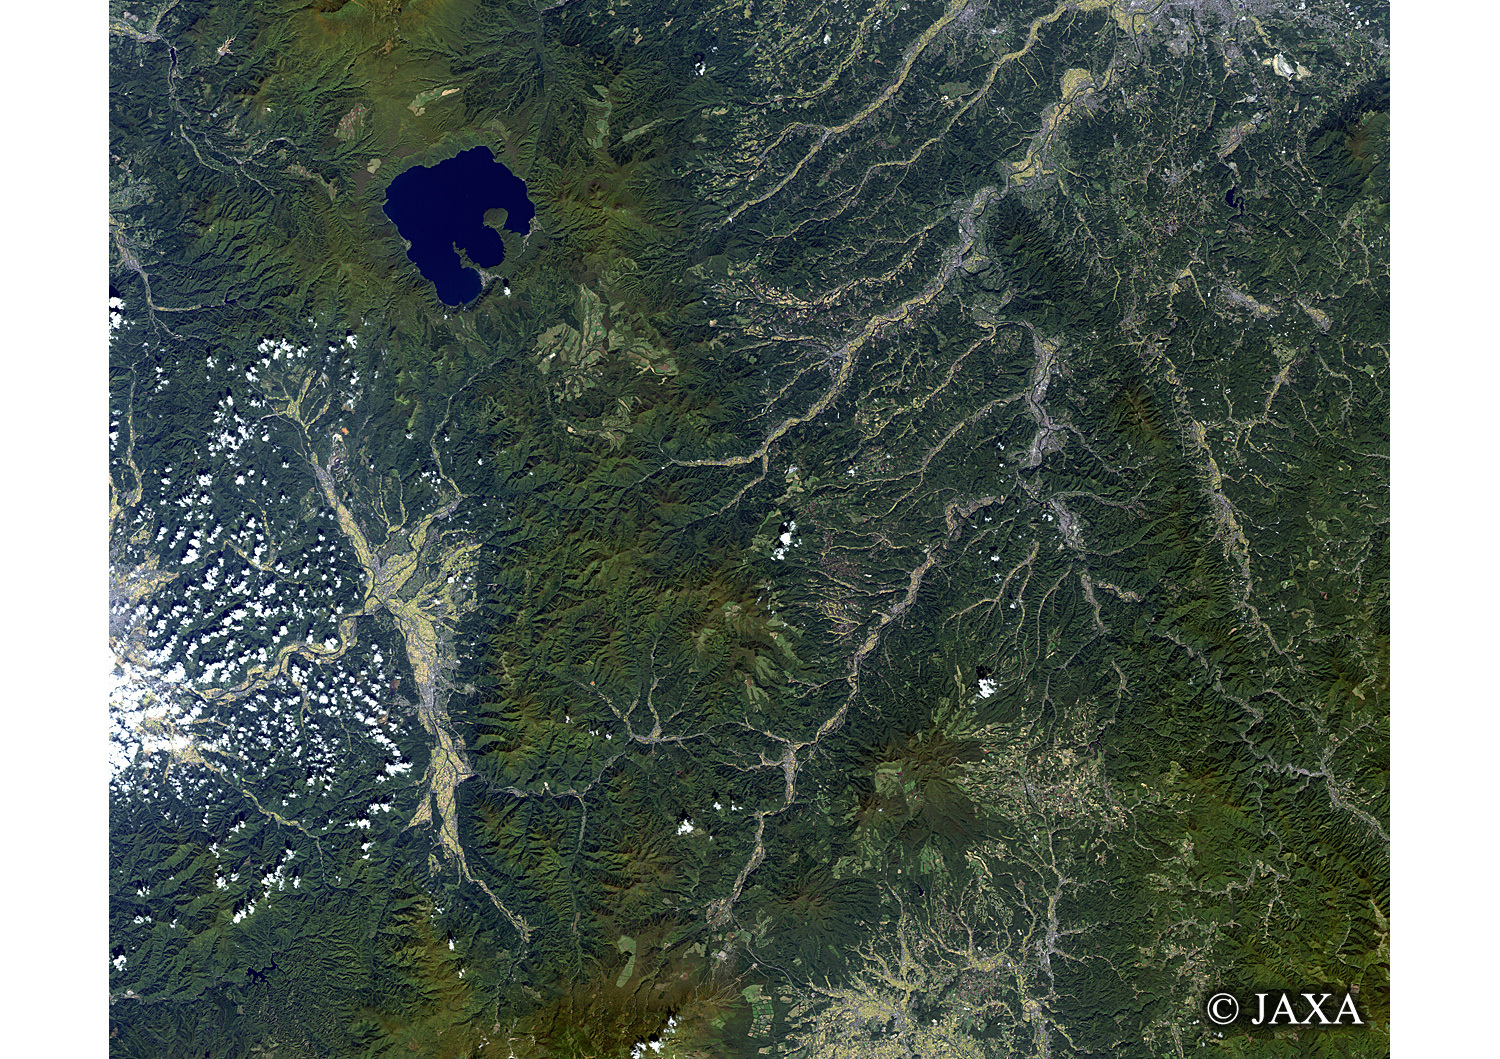 だいちから見た日本の都市 十和田湖と戸来岳:衛星画像